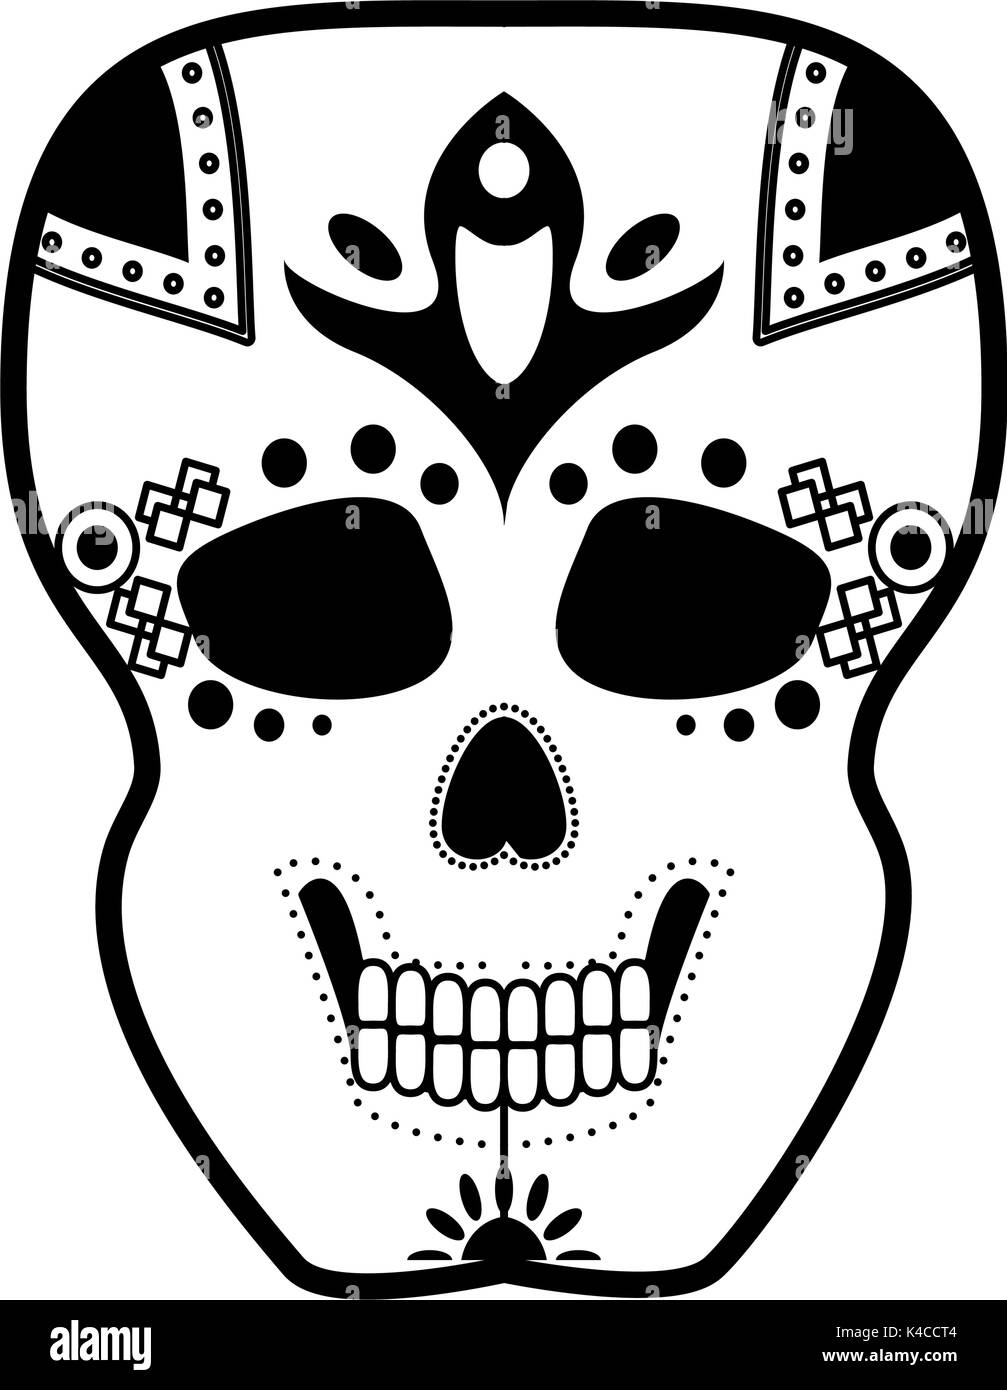 Cranio di zucchero cultura messicana immagine dell'icona Illustrazione Vettoriale